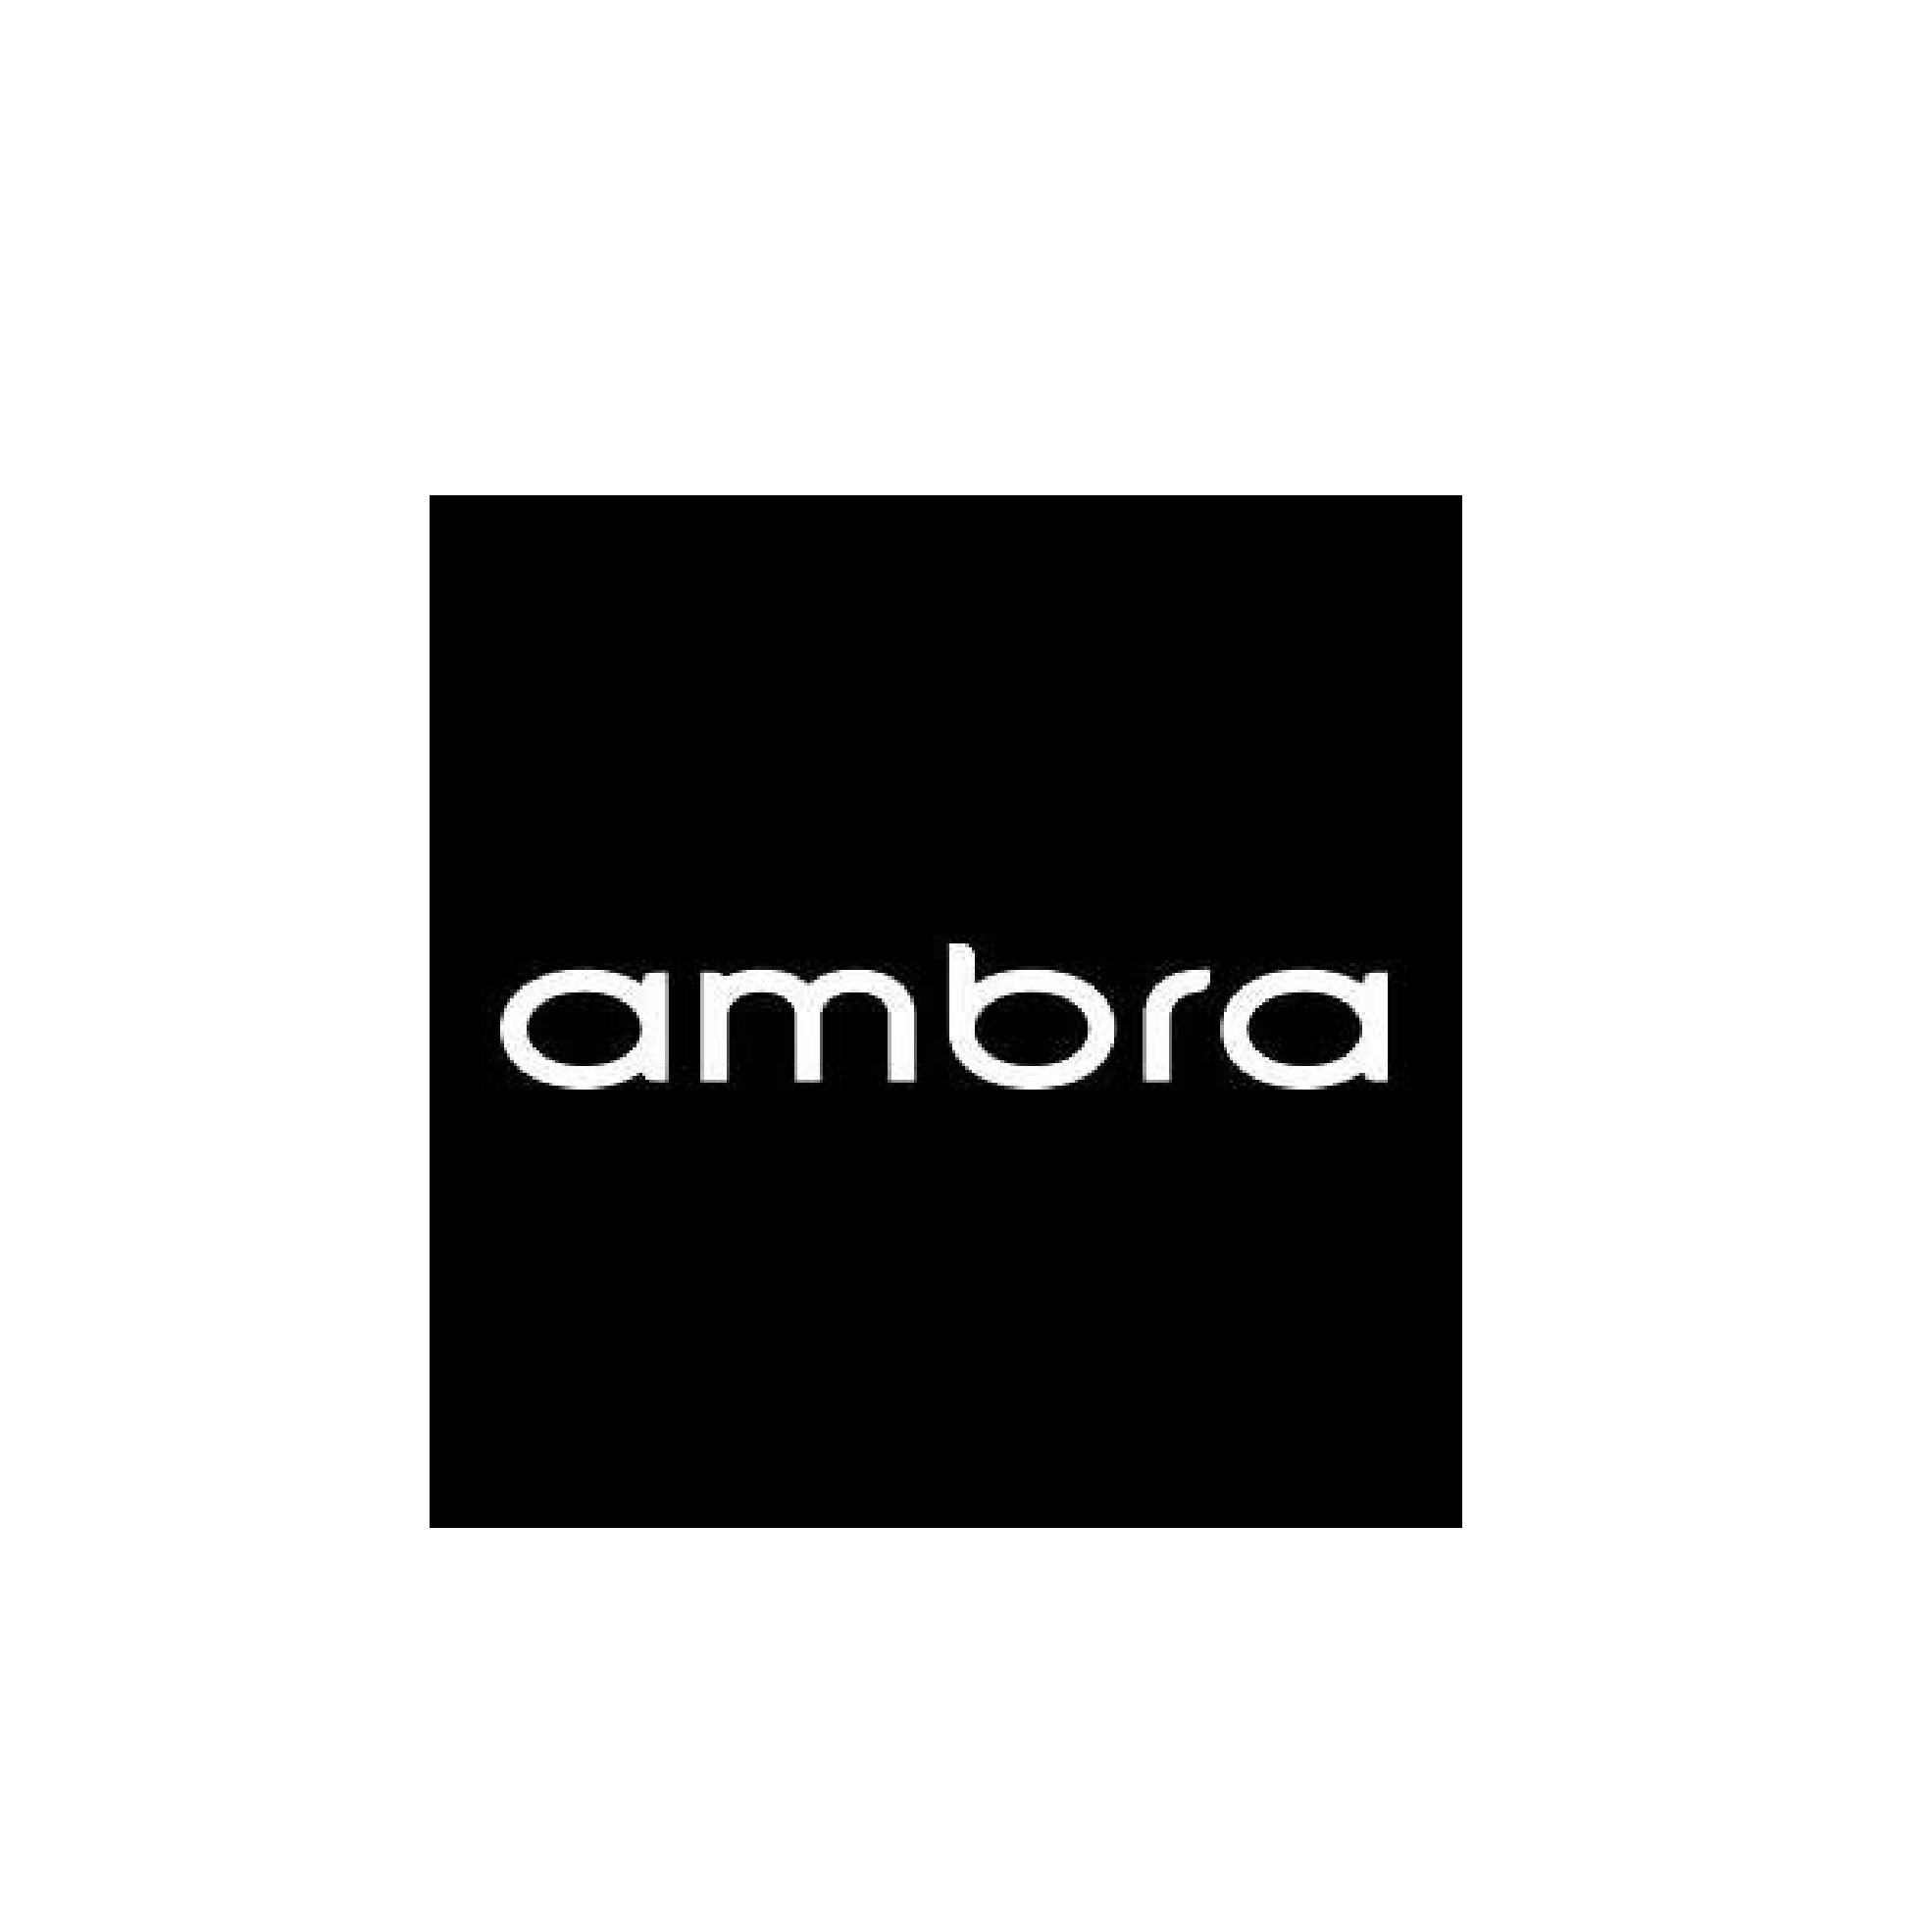 AMBRA – My Caribbean Park